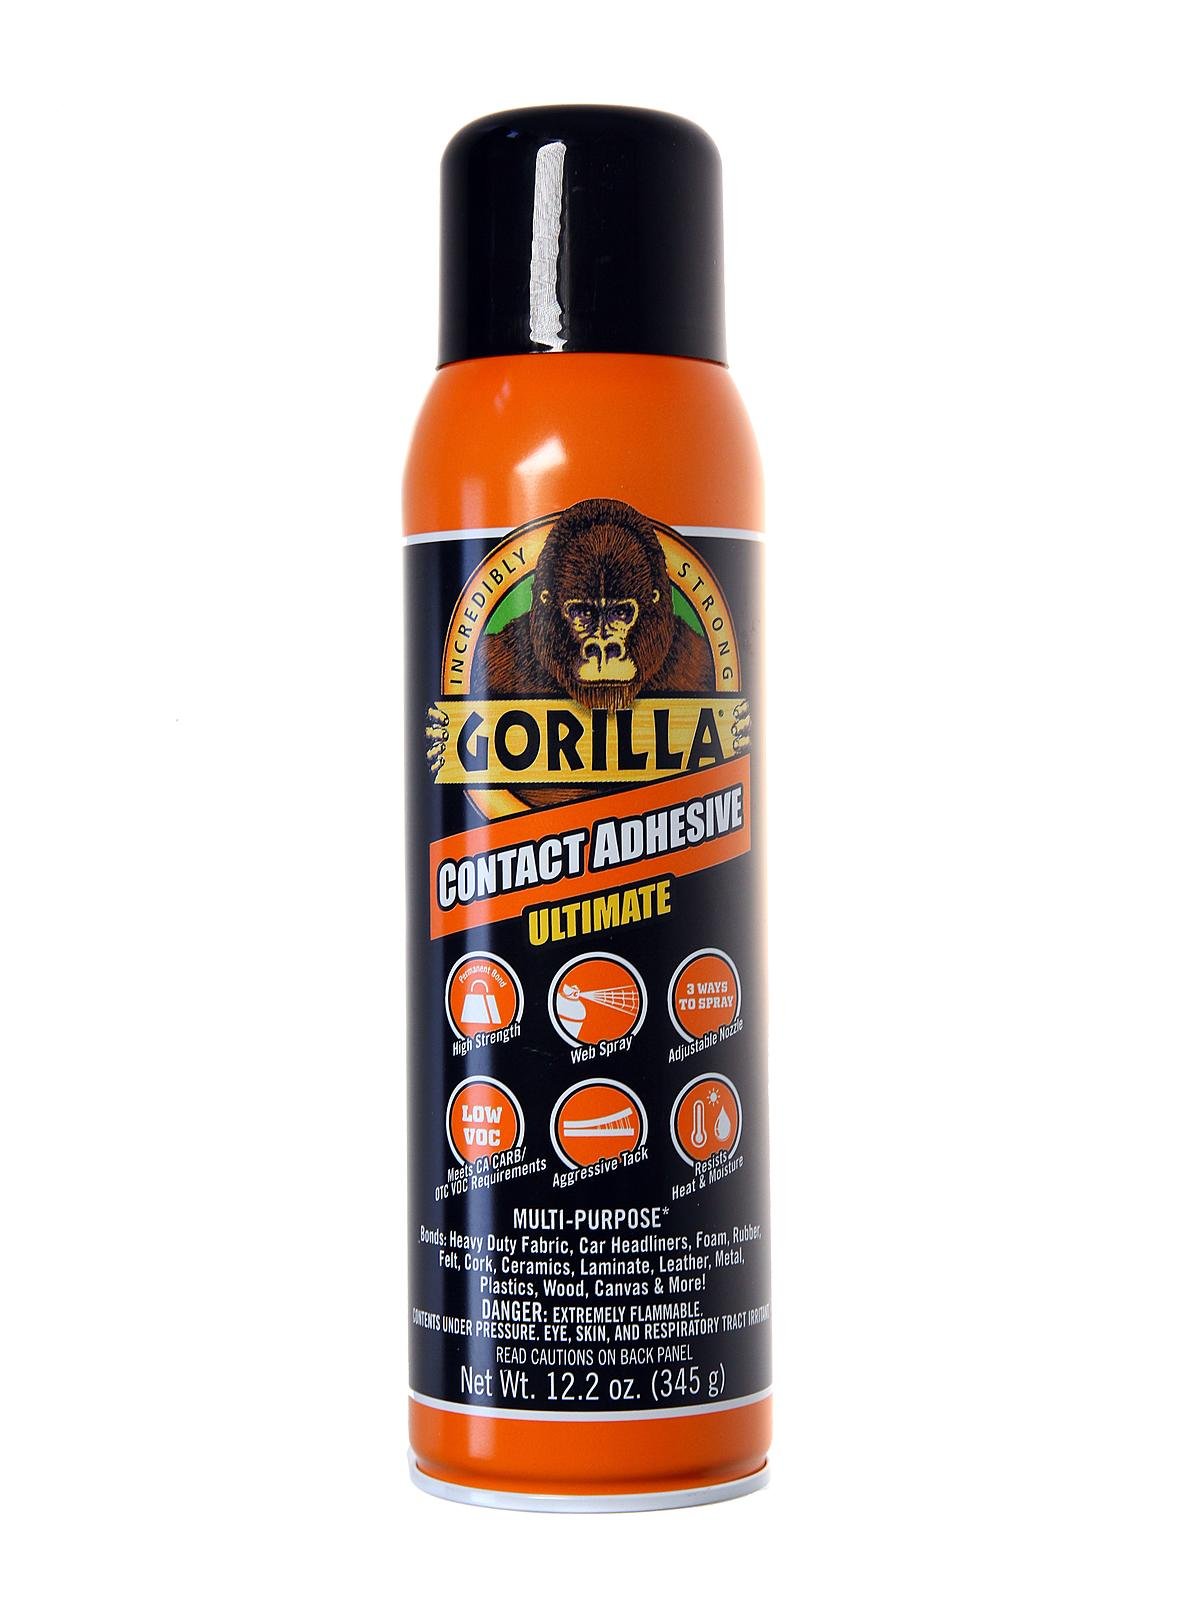 The Gorilla Glue Company Glue